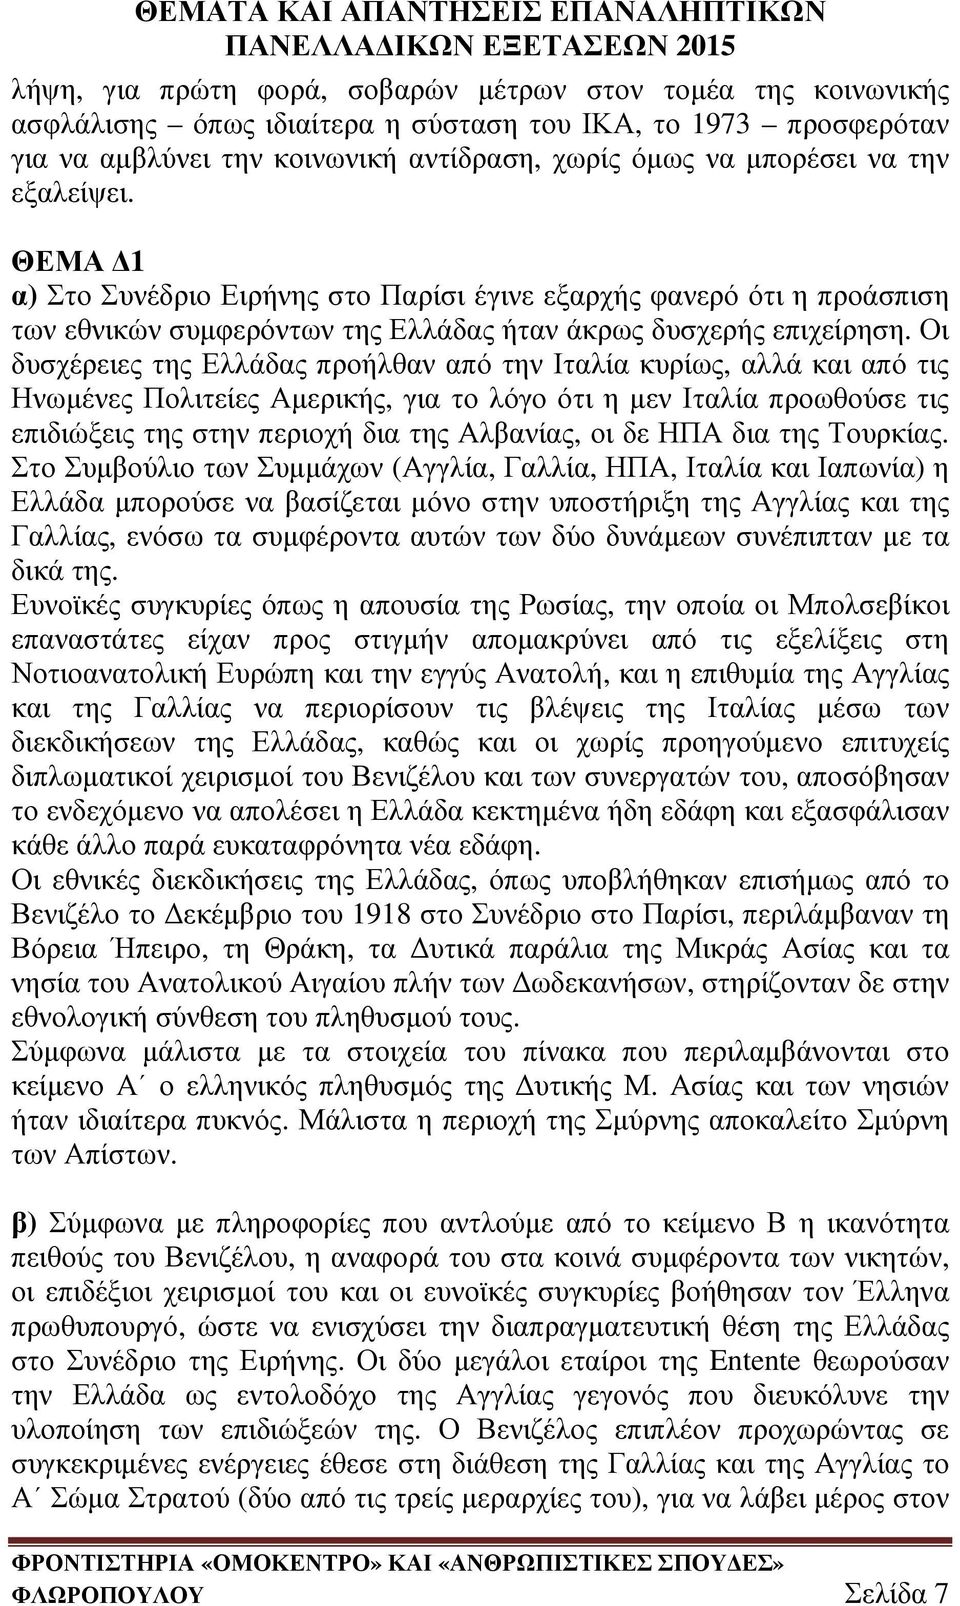 Οι δυσχέρειες της Ελλάδας προήλθαν από την Ιταλία κυρίως, αλλά και από τις Ηνωµένες Πολιτείες Αµερικής, για το λόγο ότι η µεν Ιταλία προωθούσε τις επιδιώξεις της στην περιοχή δια της Αλβανίας, οι δε